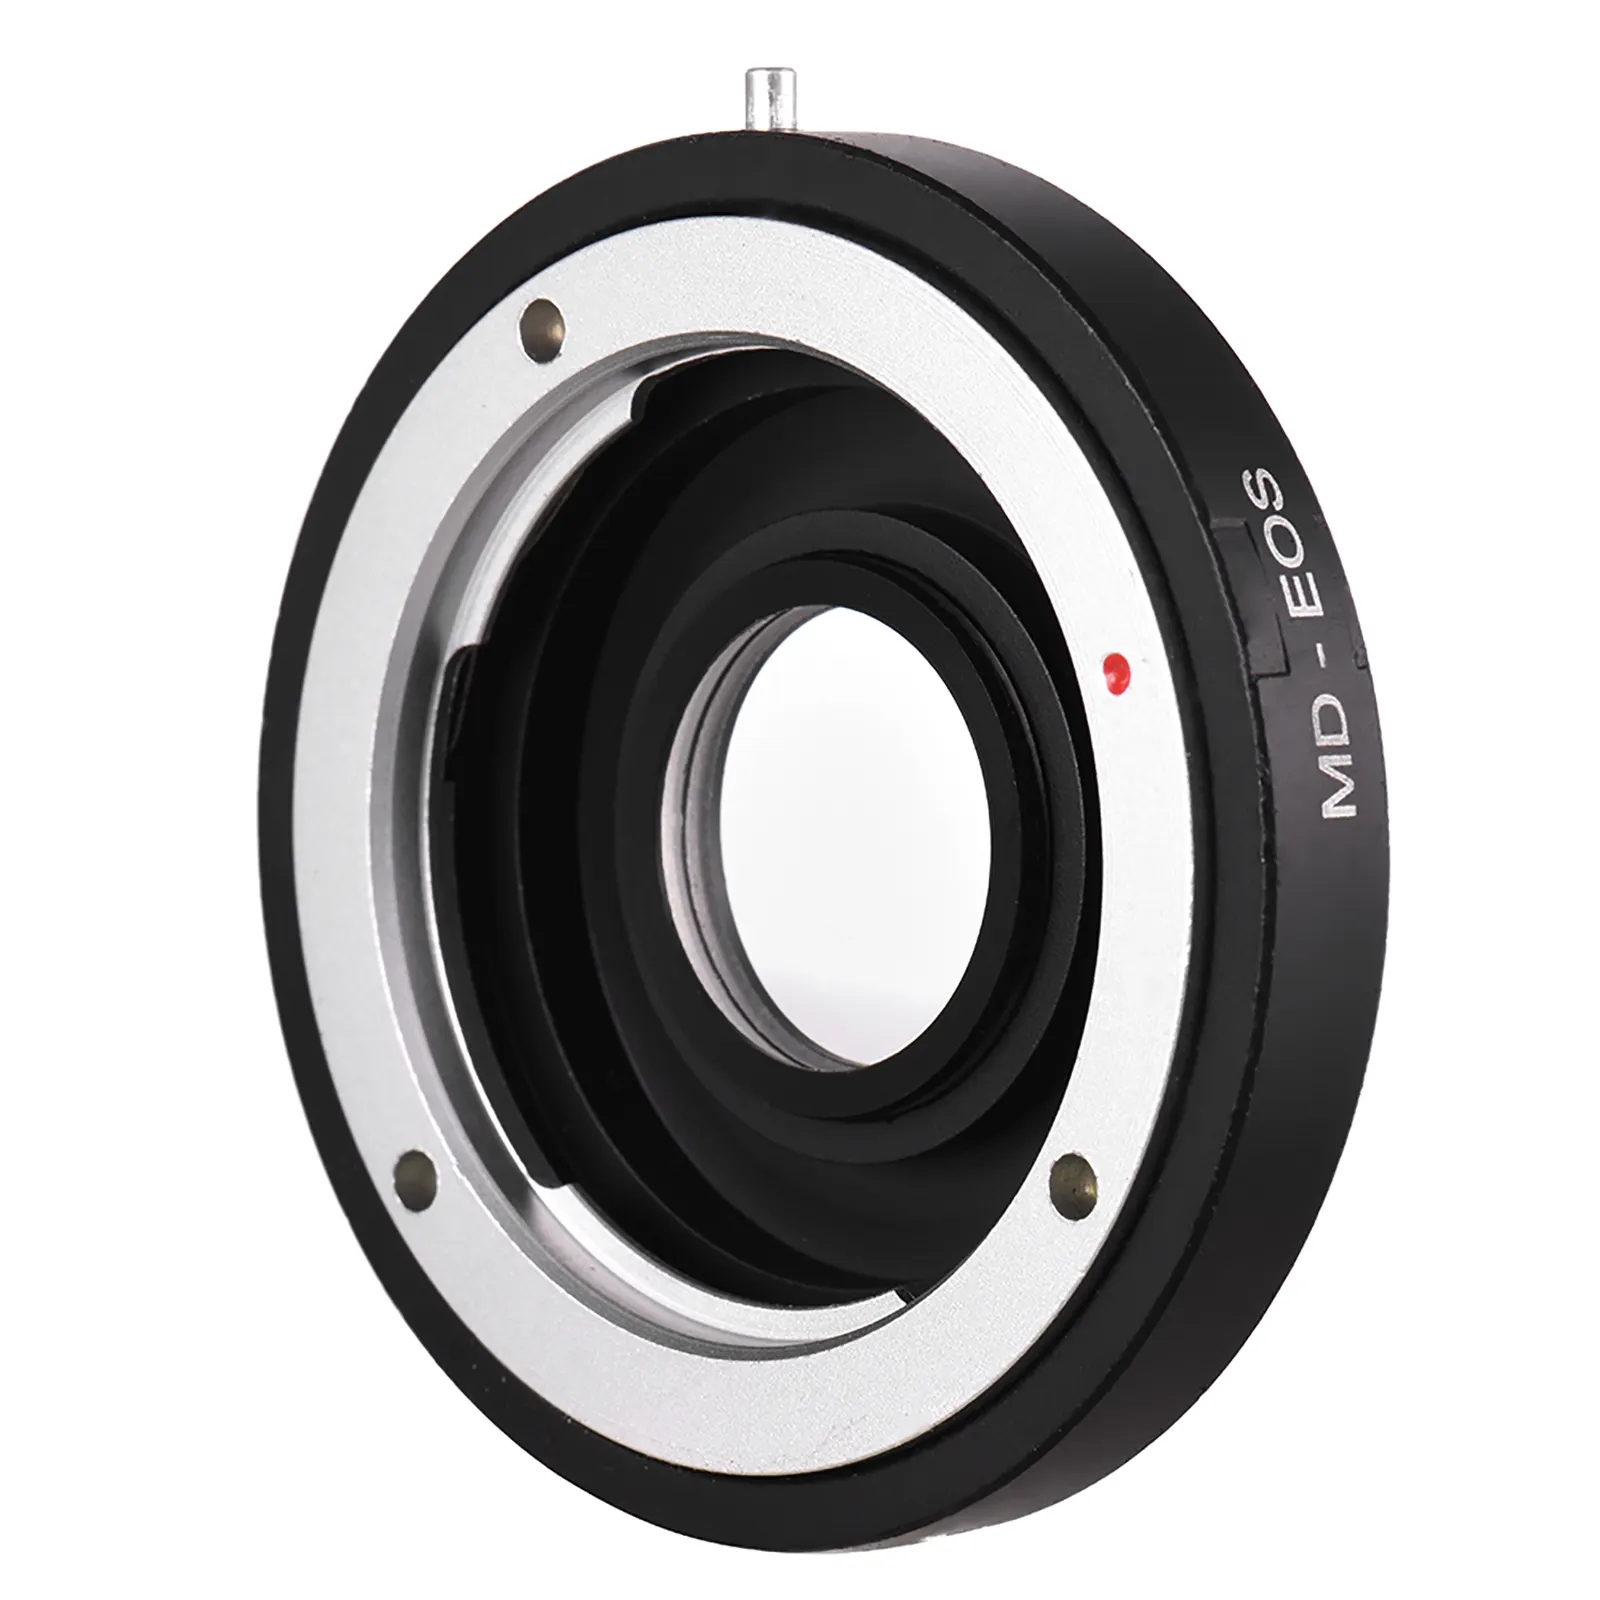 Anillo adaptador de montaje de lente MD-EOS, con lente correctiva para Minolta MD, para Canon EOS EF, enfoque de cámara Infinity